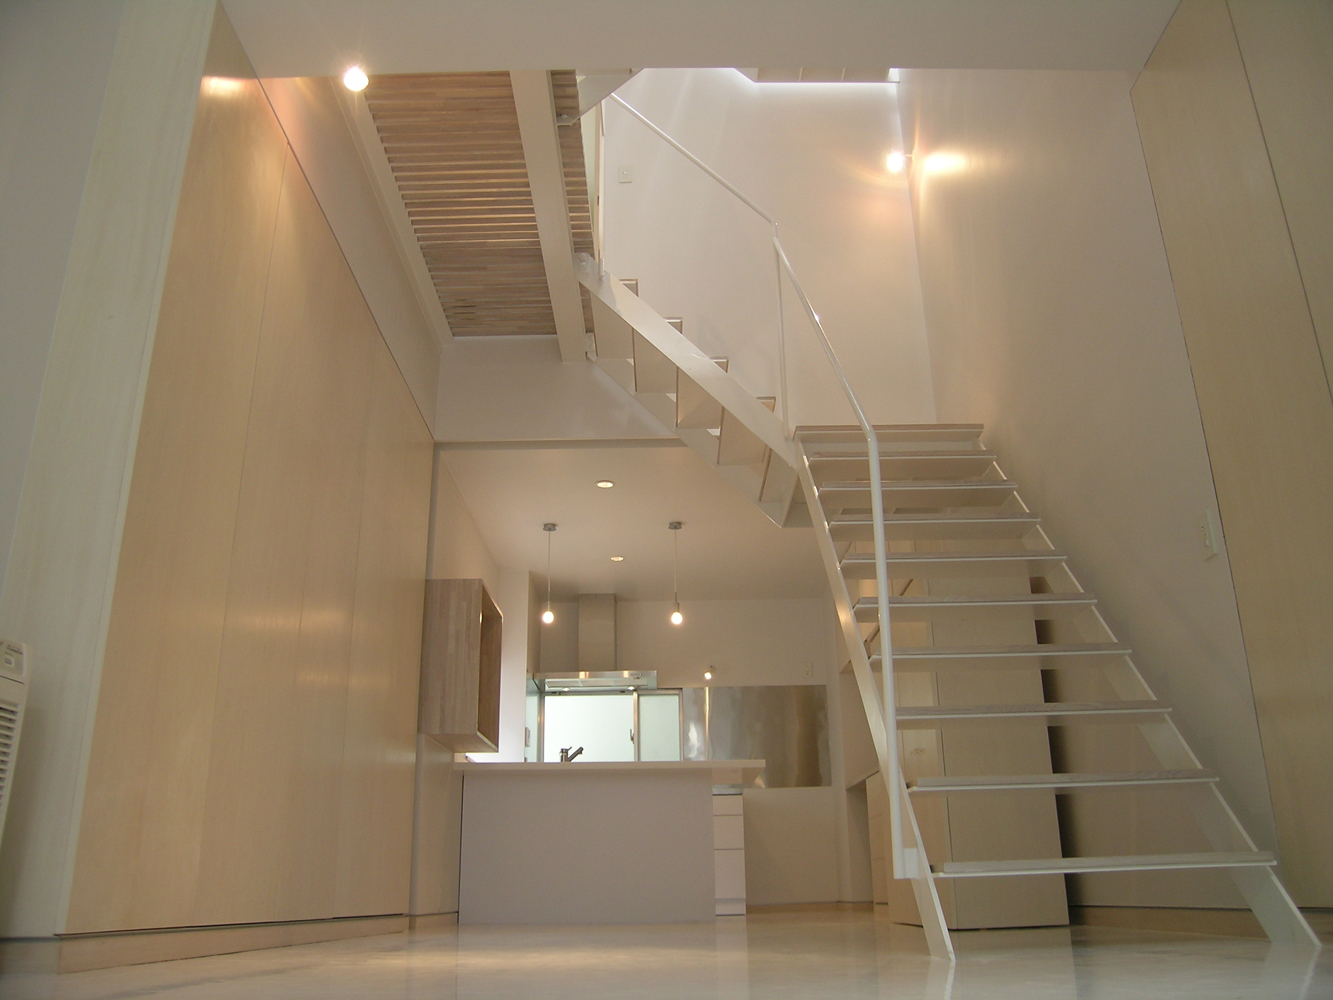 床壁天井の白い空間に建具や階段の踏み板が薄いベージュで優しい雰囲気